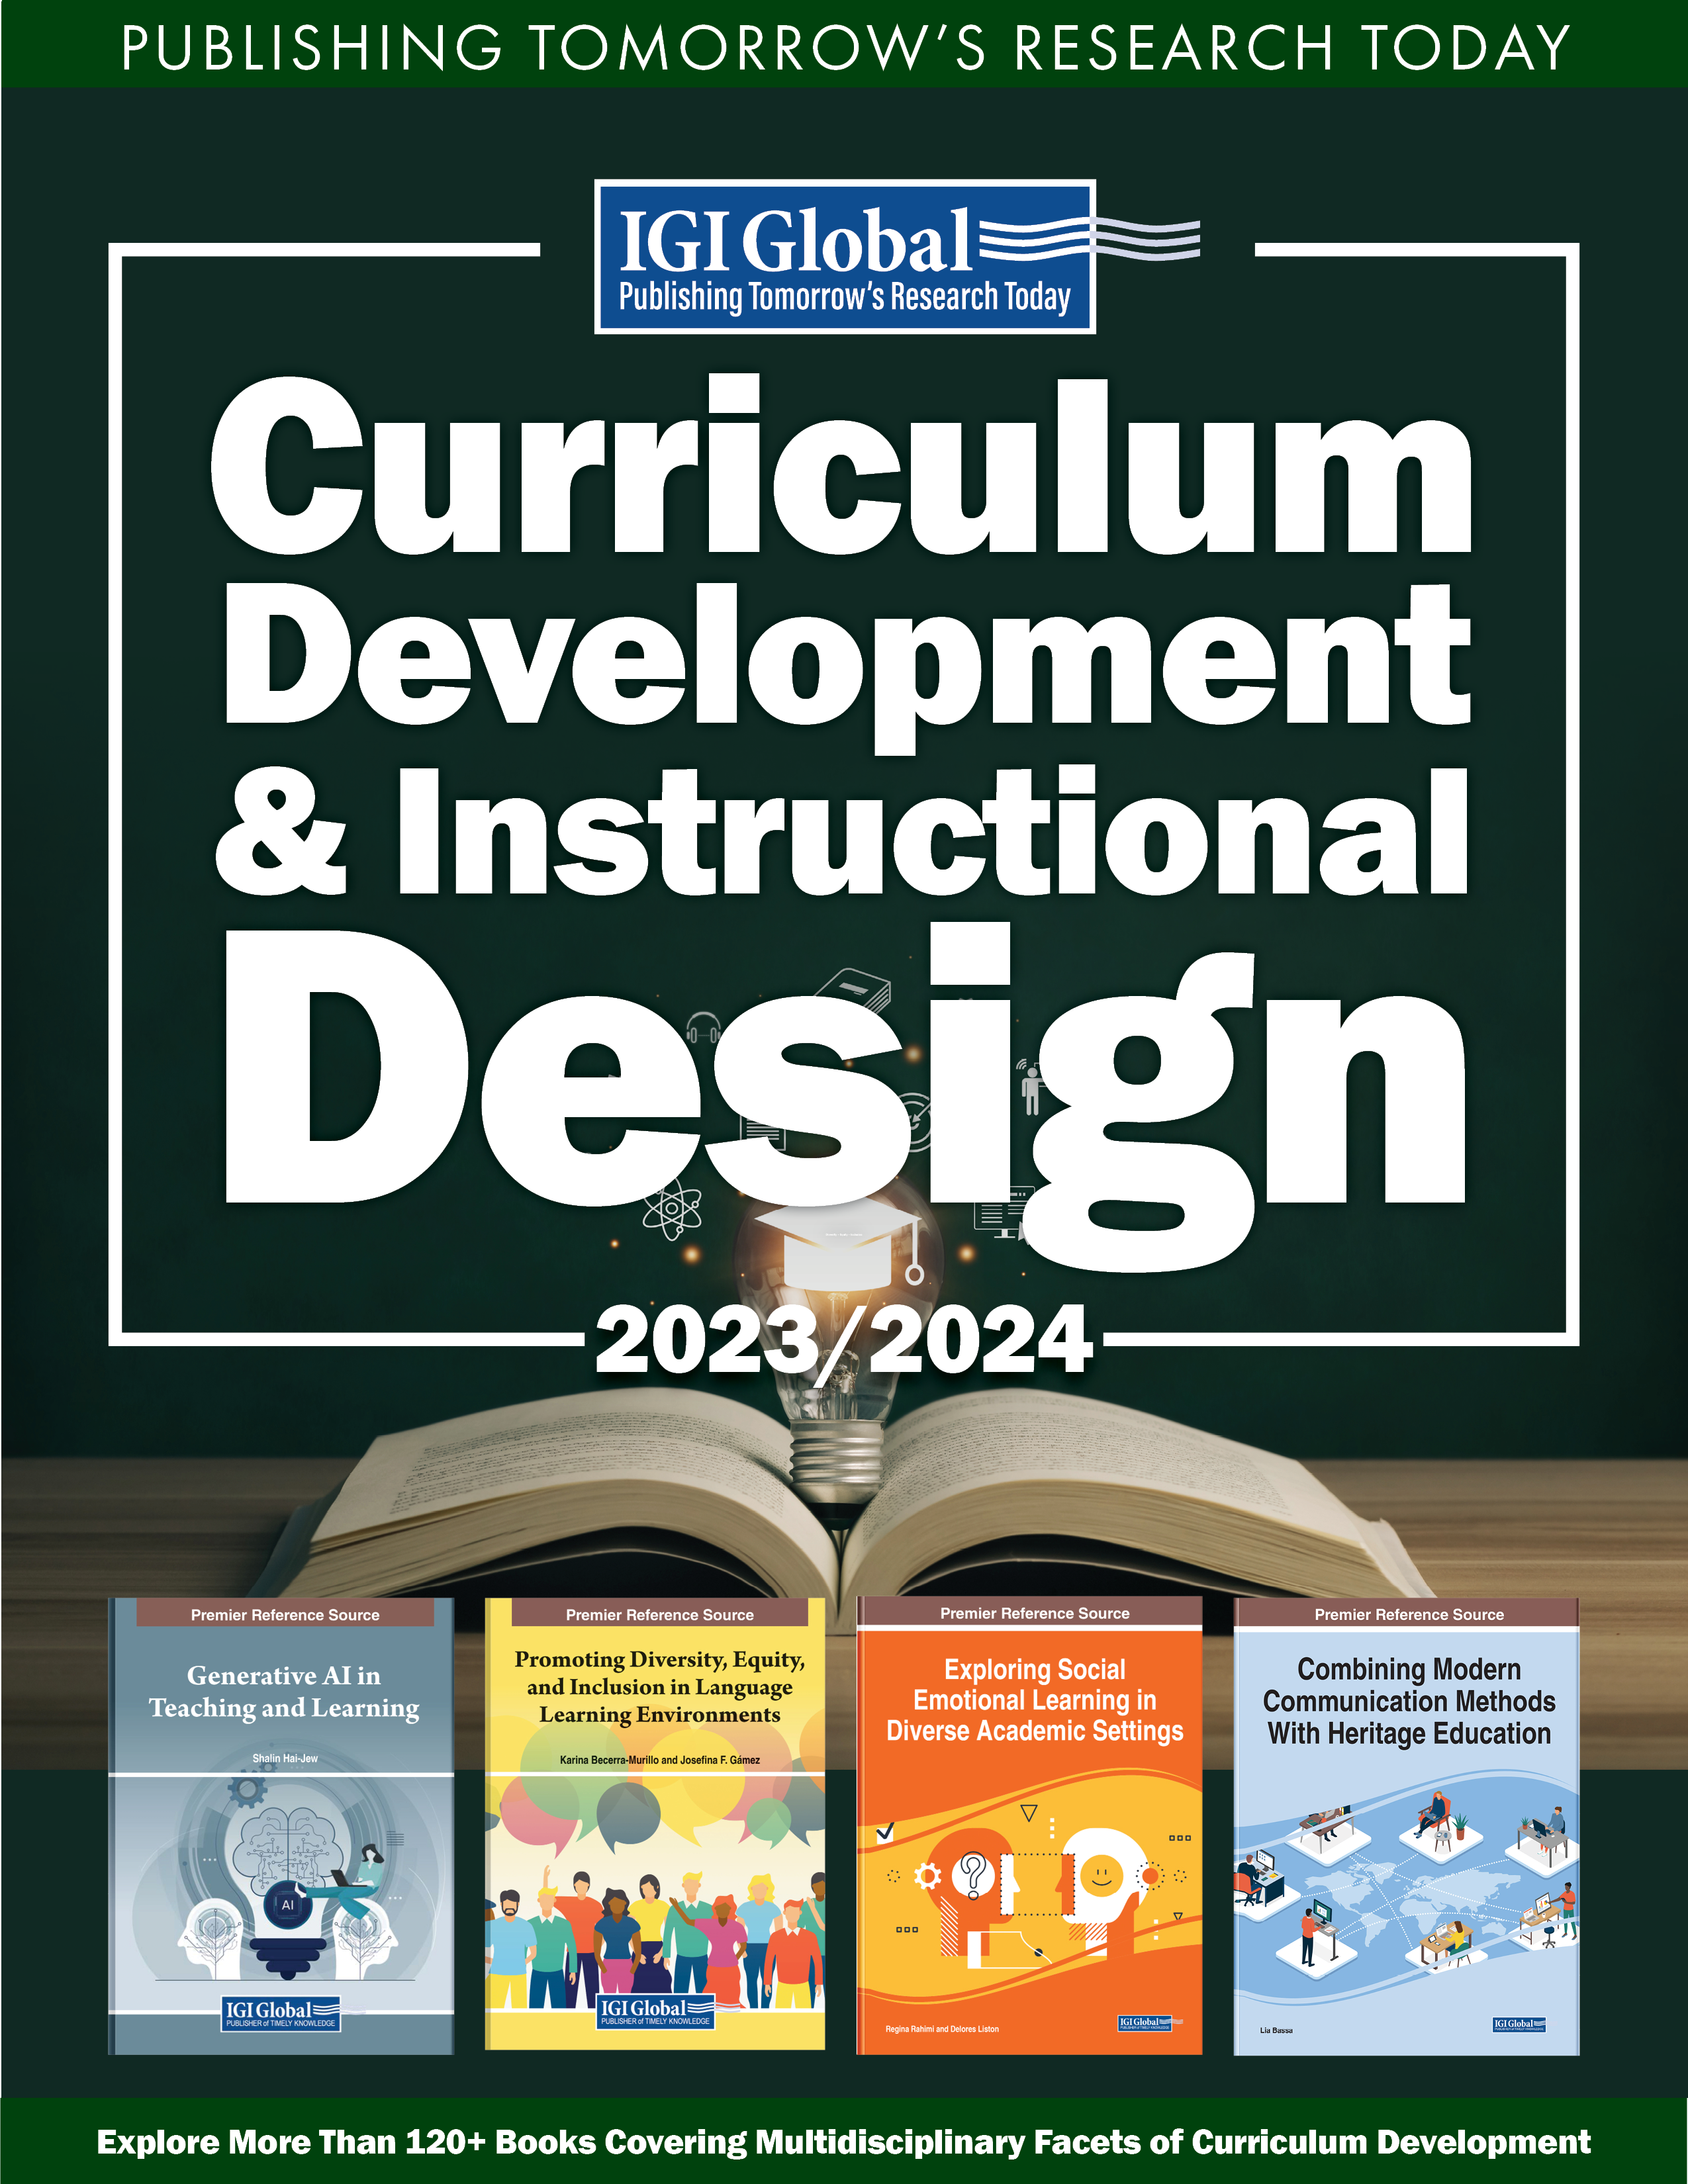 catalog-new-curriculum-development-instructional-design-022924_1518